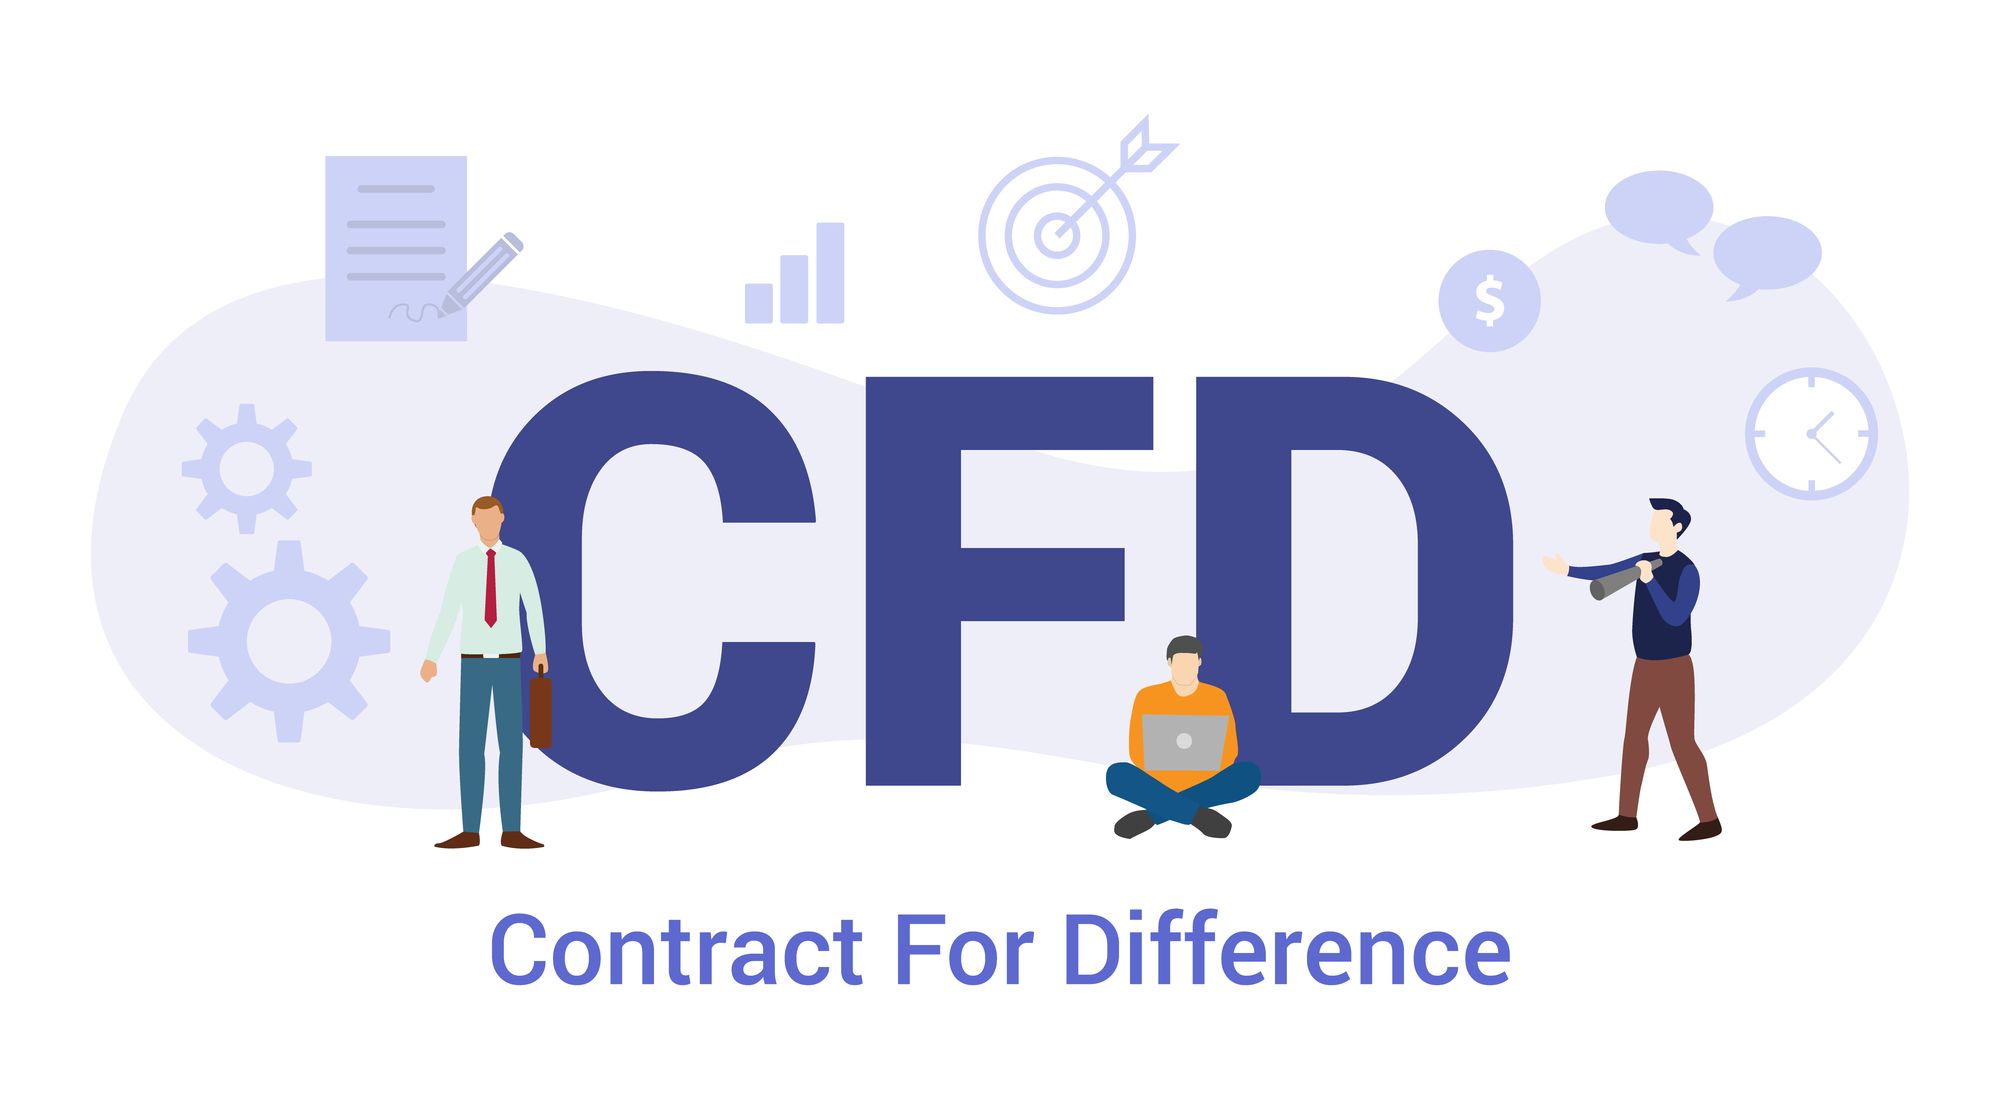 CFD란 차액결제거래： CFD 거래 방법 및 장점 - 레버리지 및 마진거래 활용법